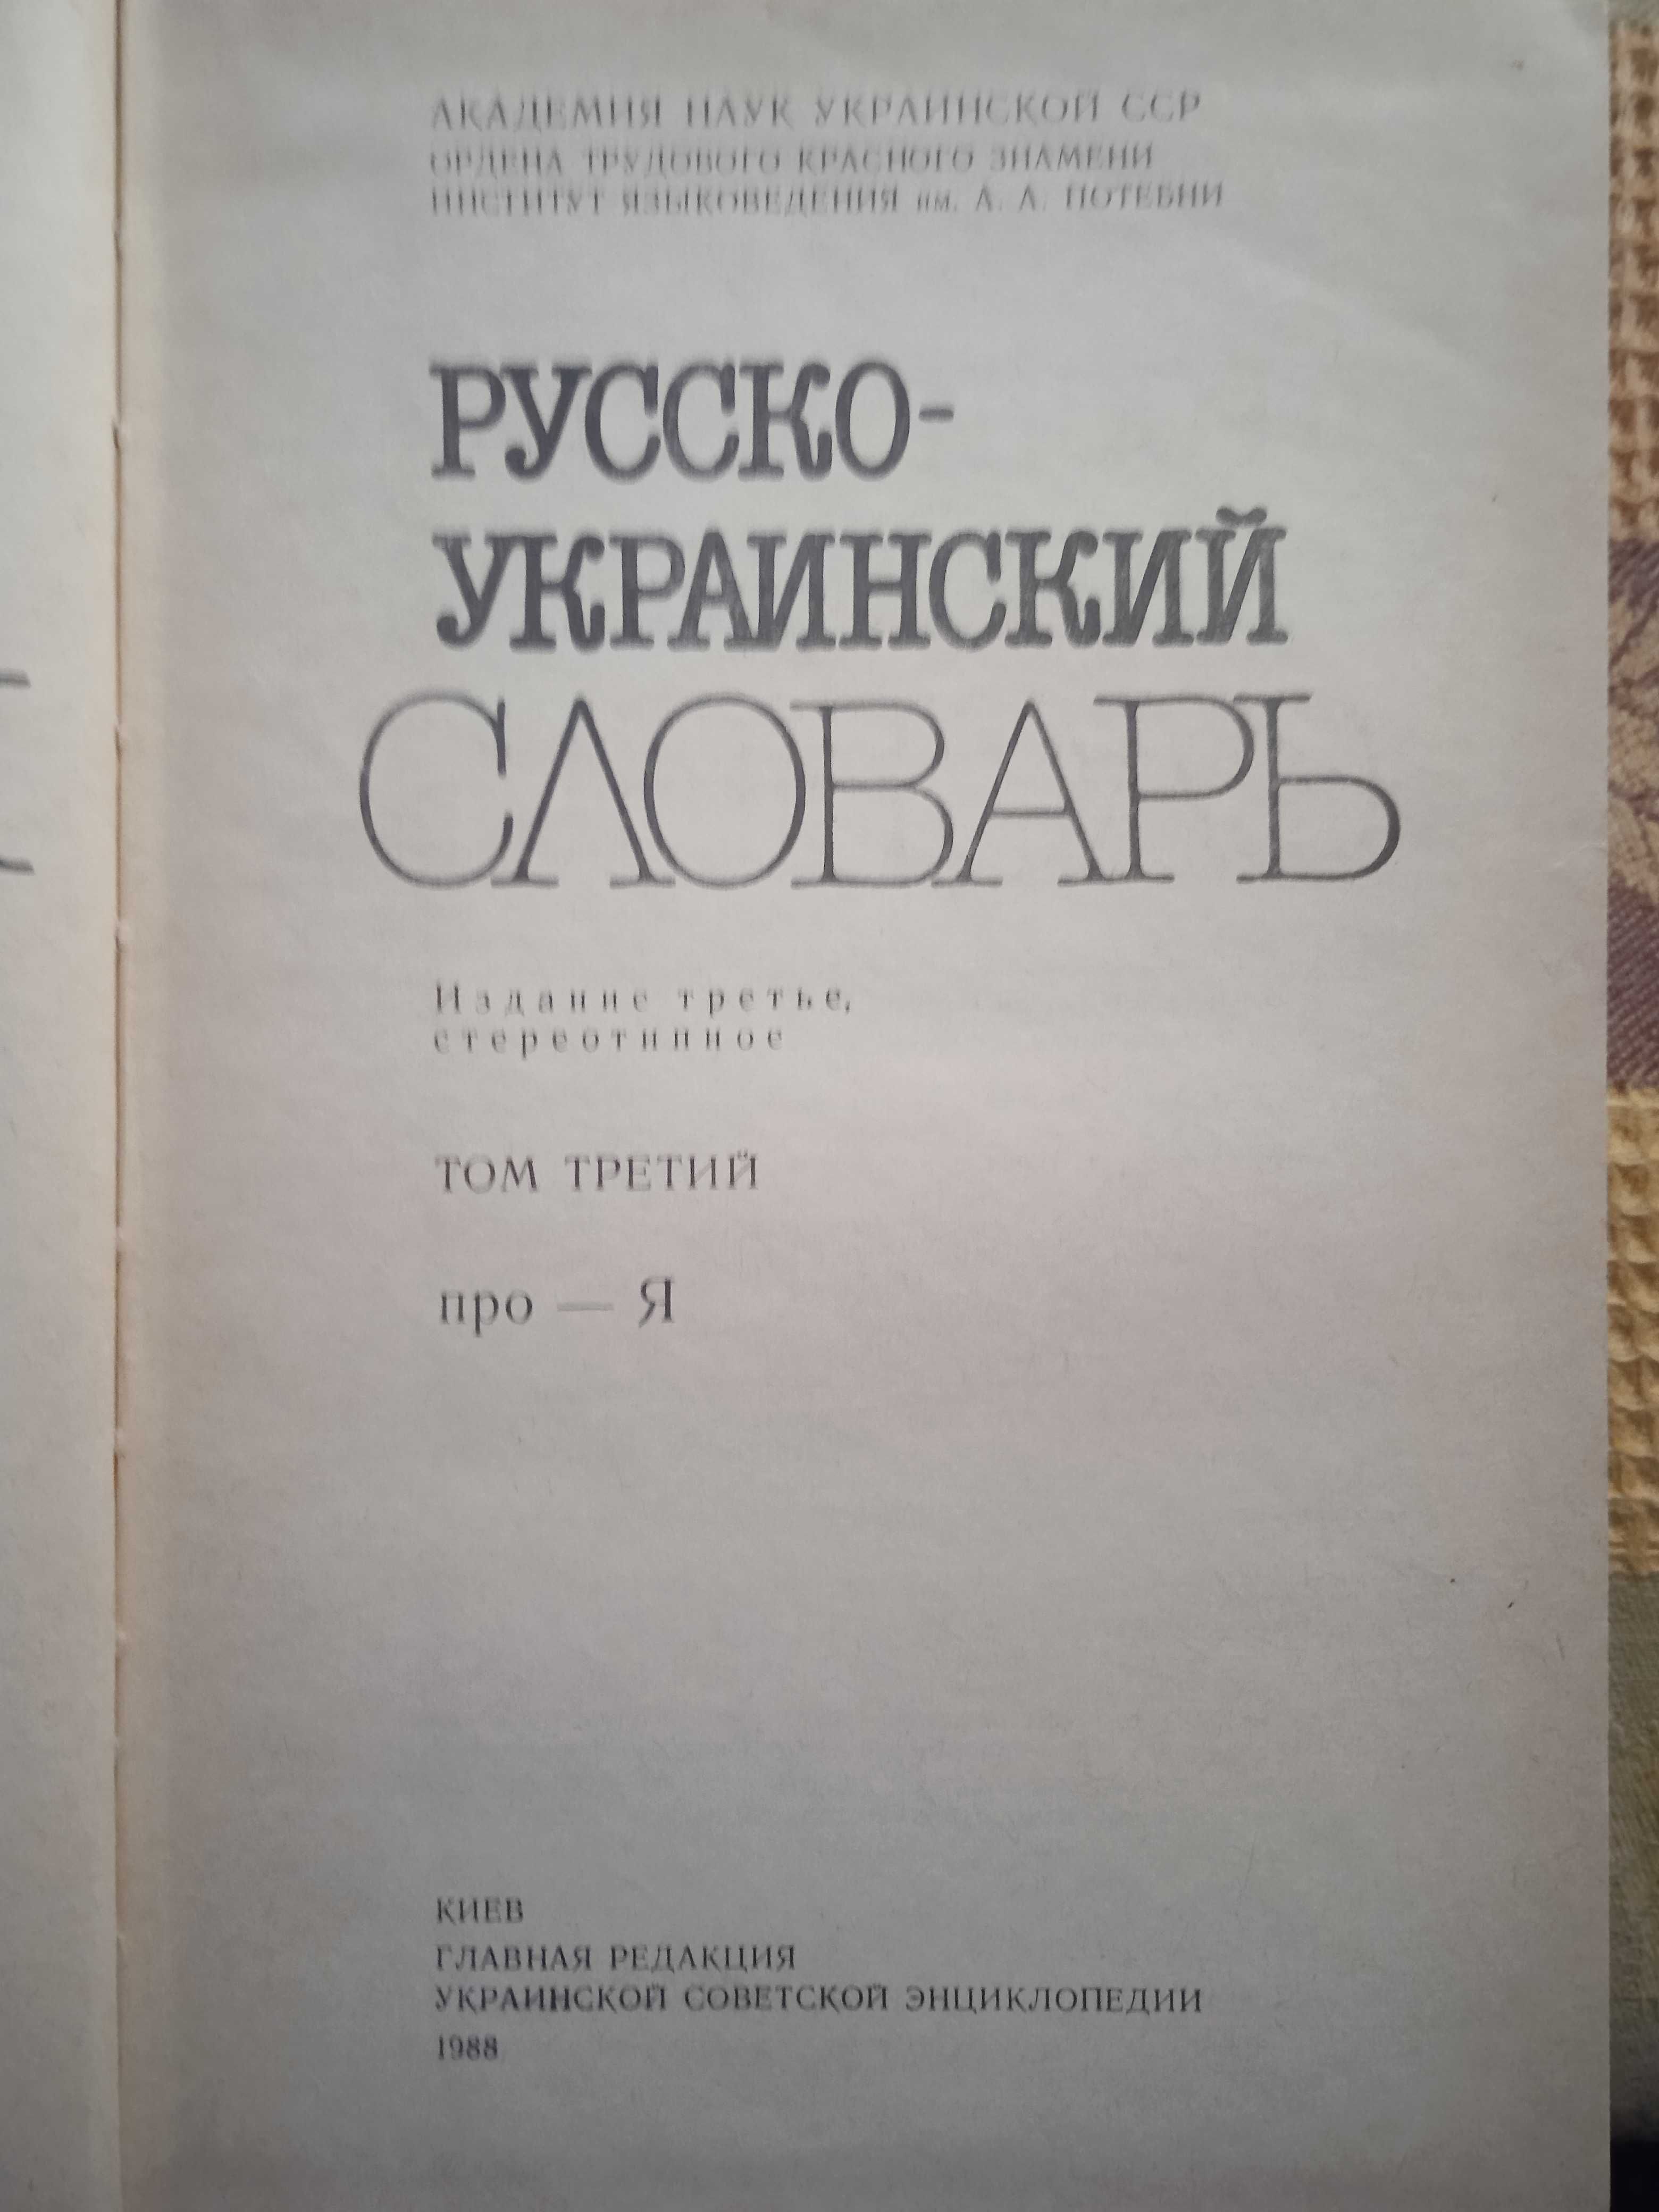 Русско-украинский словарь в 3-х томах